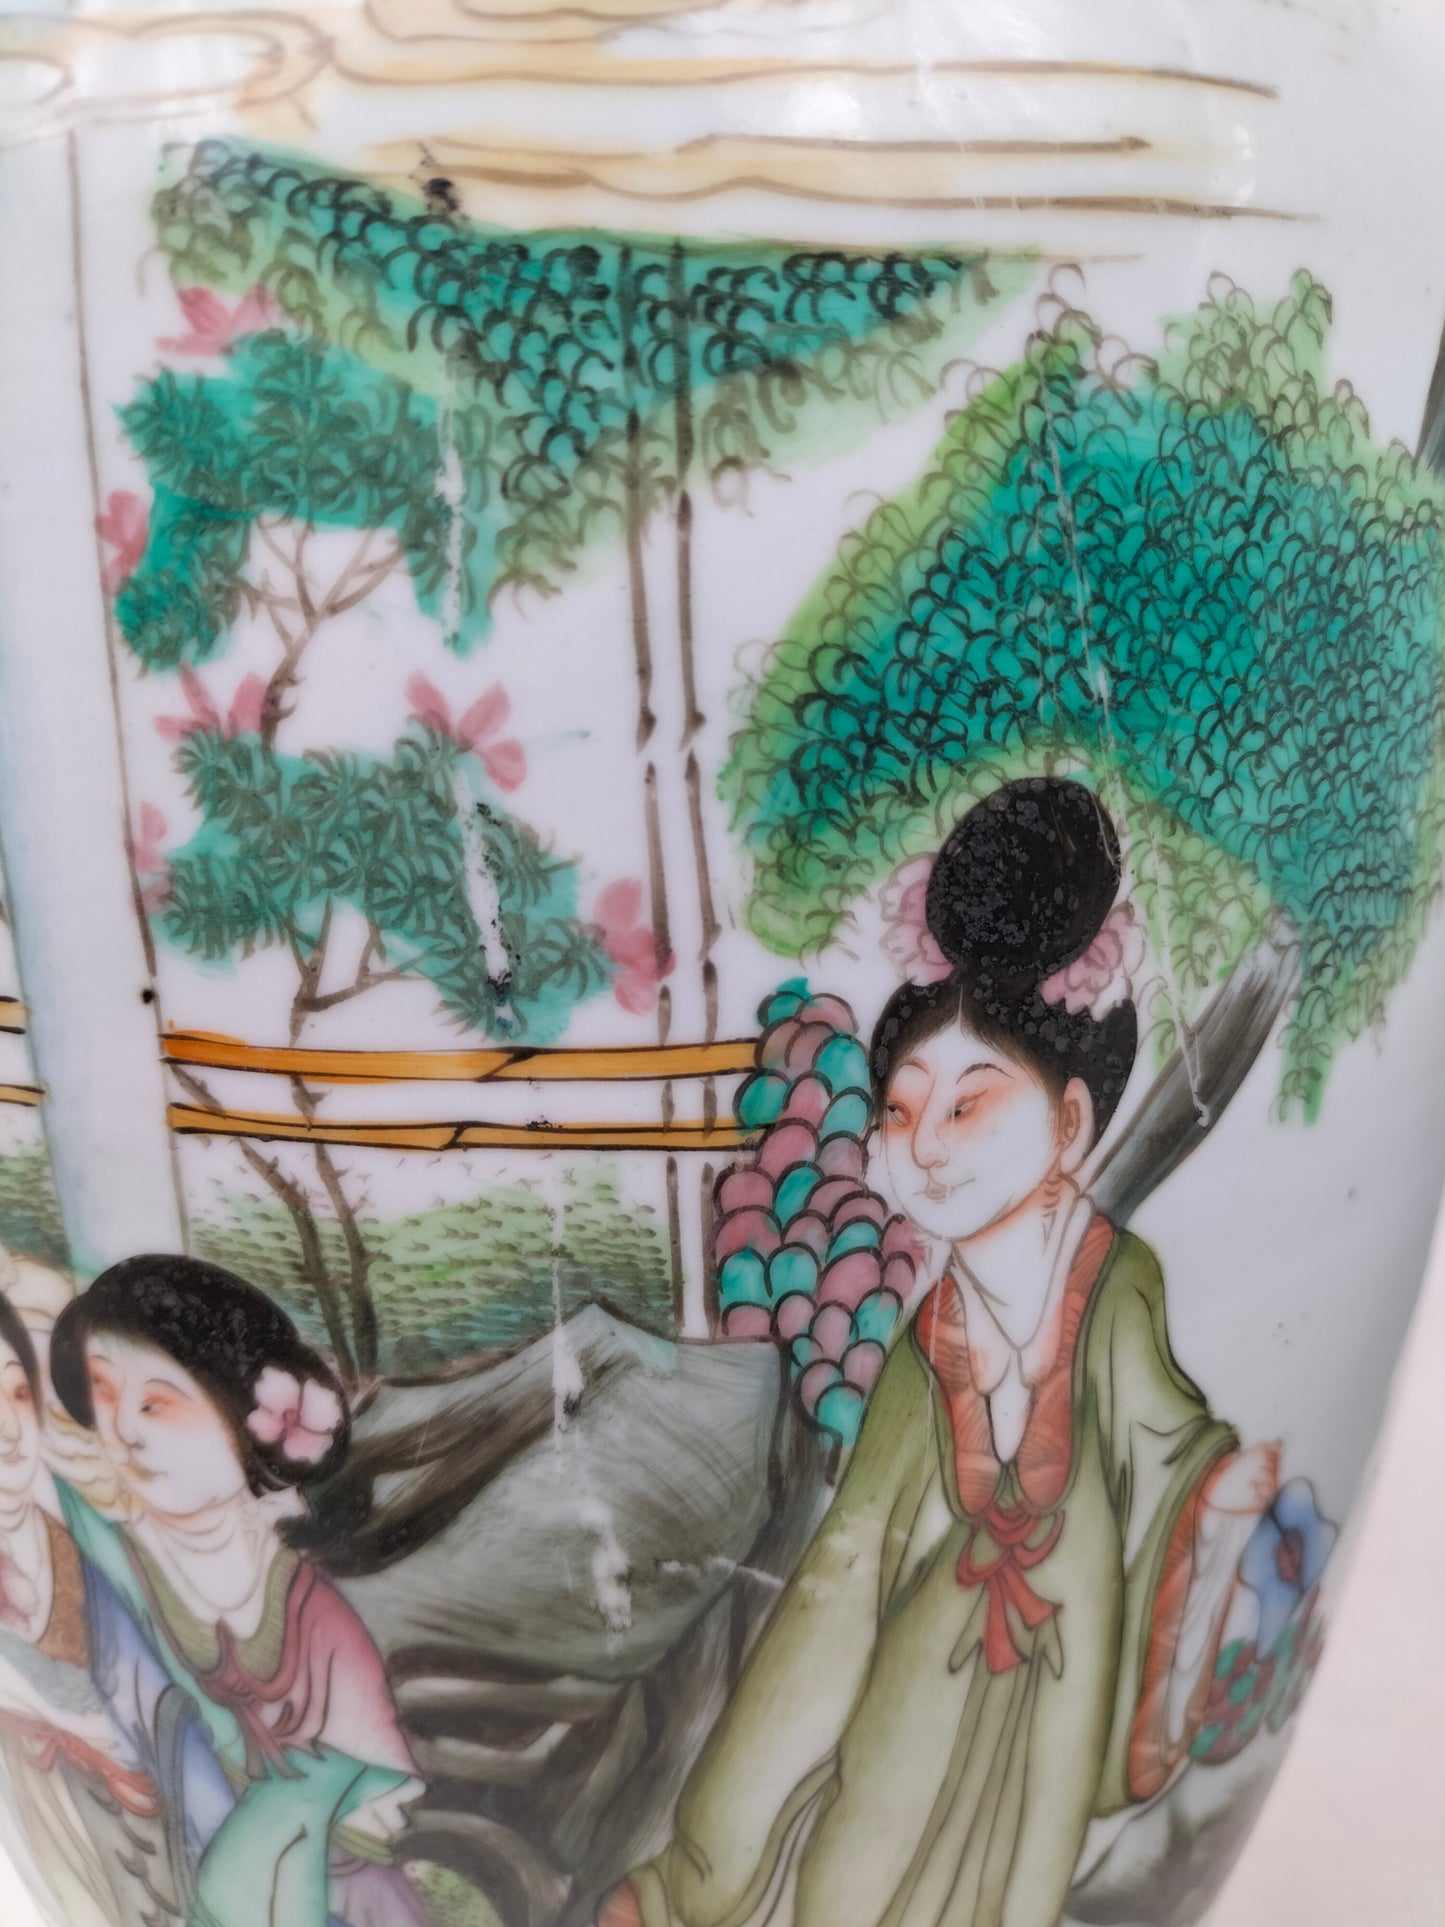 一对大型古董中国彩绘花瓶，饰有花园场景//民国时期（1912-1949）